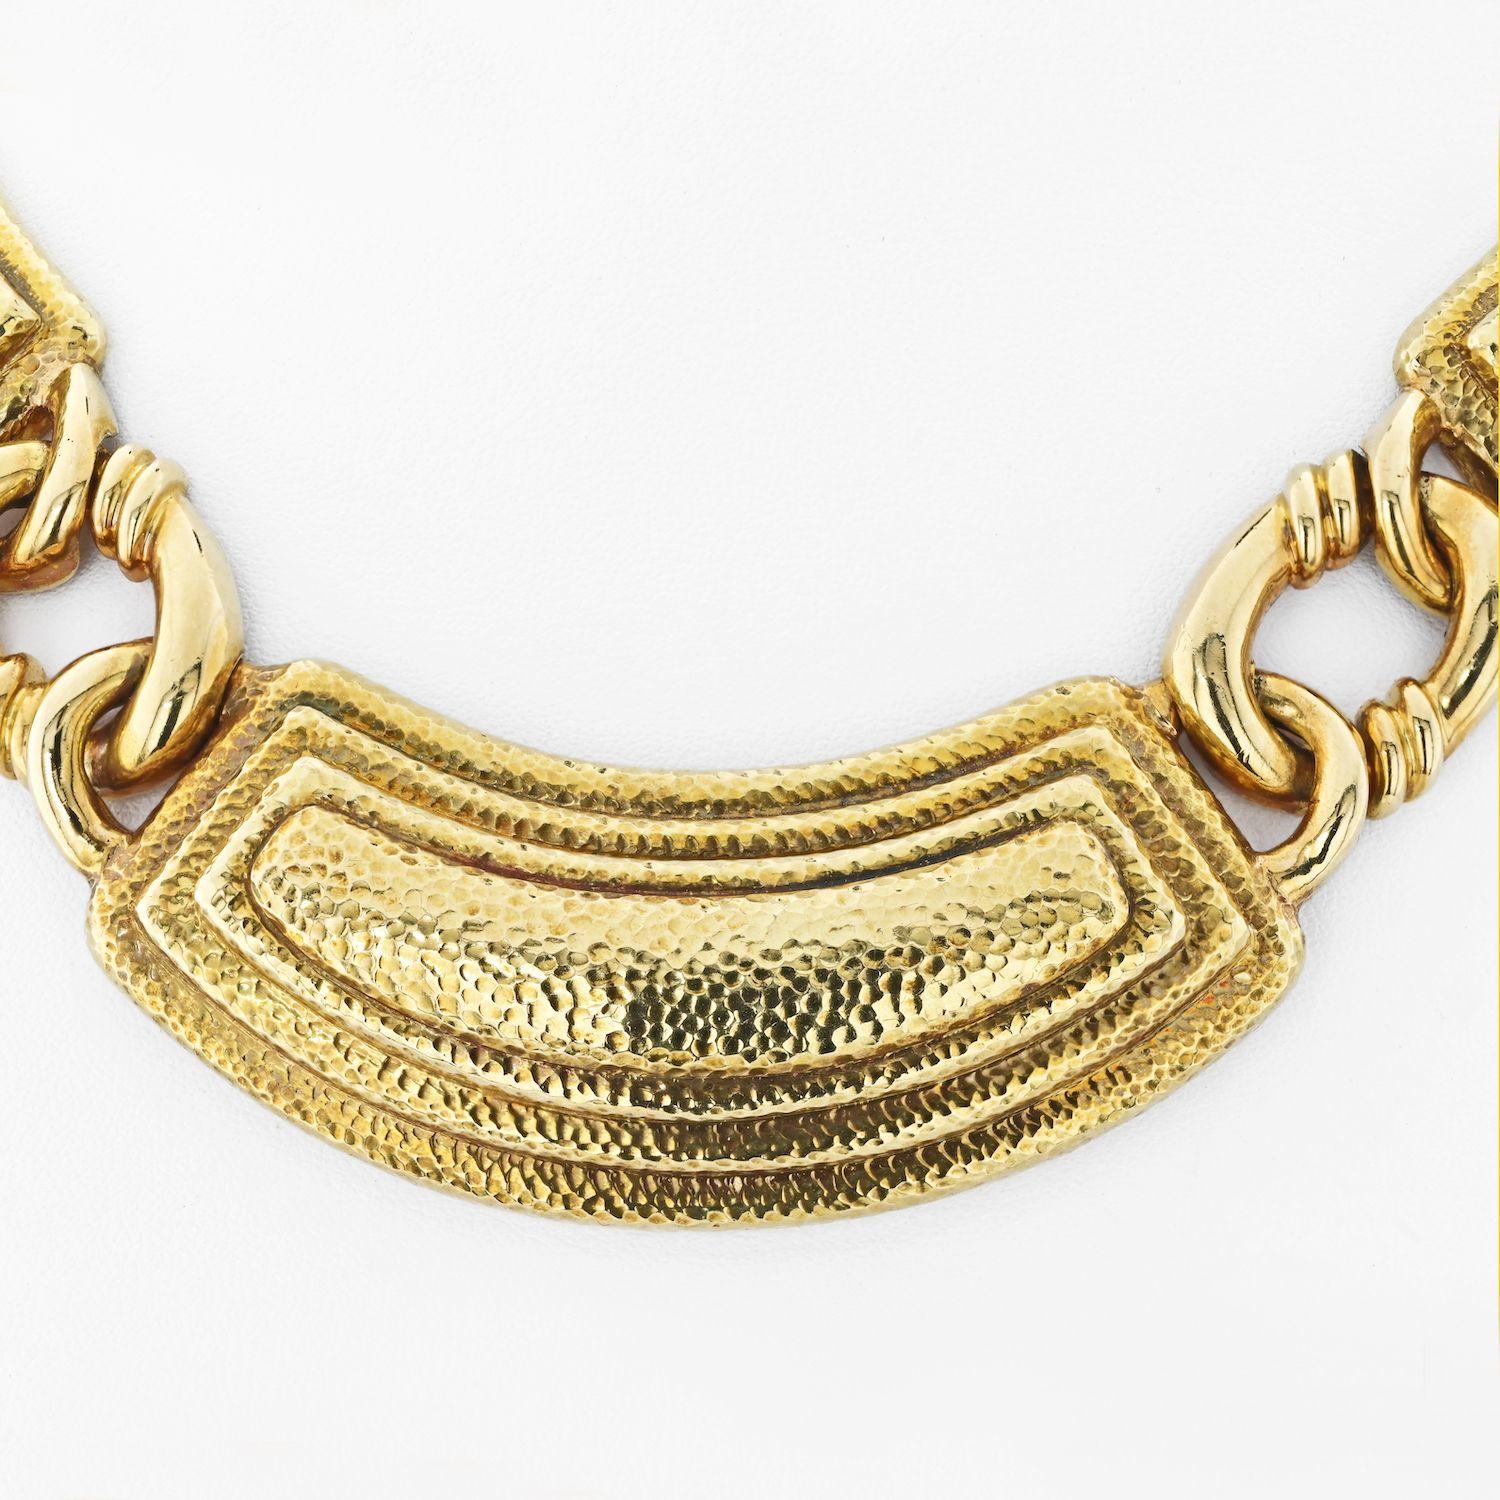 Le collier David Webb en or jaune 18 carats du monde antique est si facile à porter qu'il présente un design intemporel qui peut être facilement incorporé à n'importe quelle tenue. Le collier s'adapte à tous les décolletés, tandis que les détails